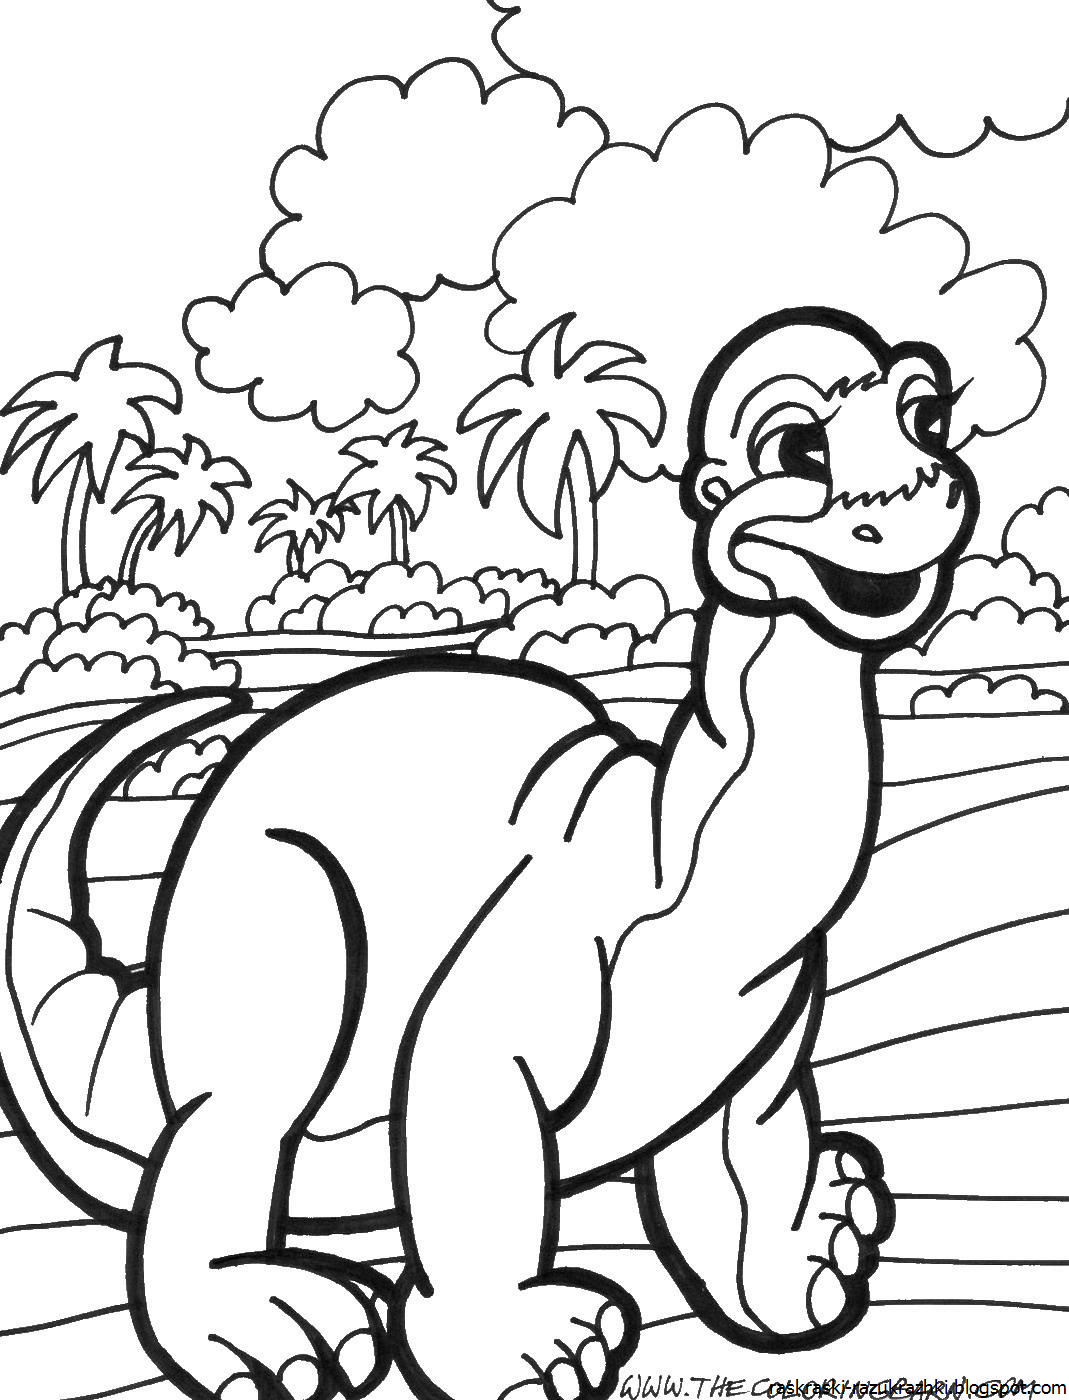 Динозавры раскраска а4. Динозавры / раскраска. Динозавры для раскрашивания детям. Динозавр раскраска для детей. Раскраска "Динозаврики".